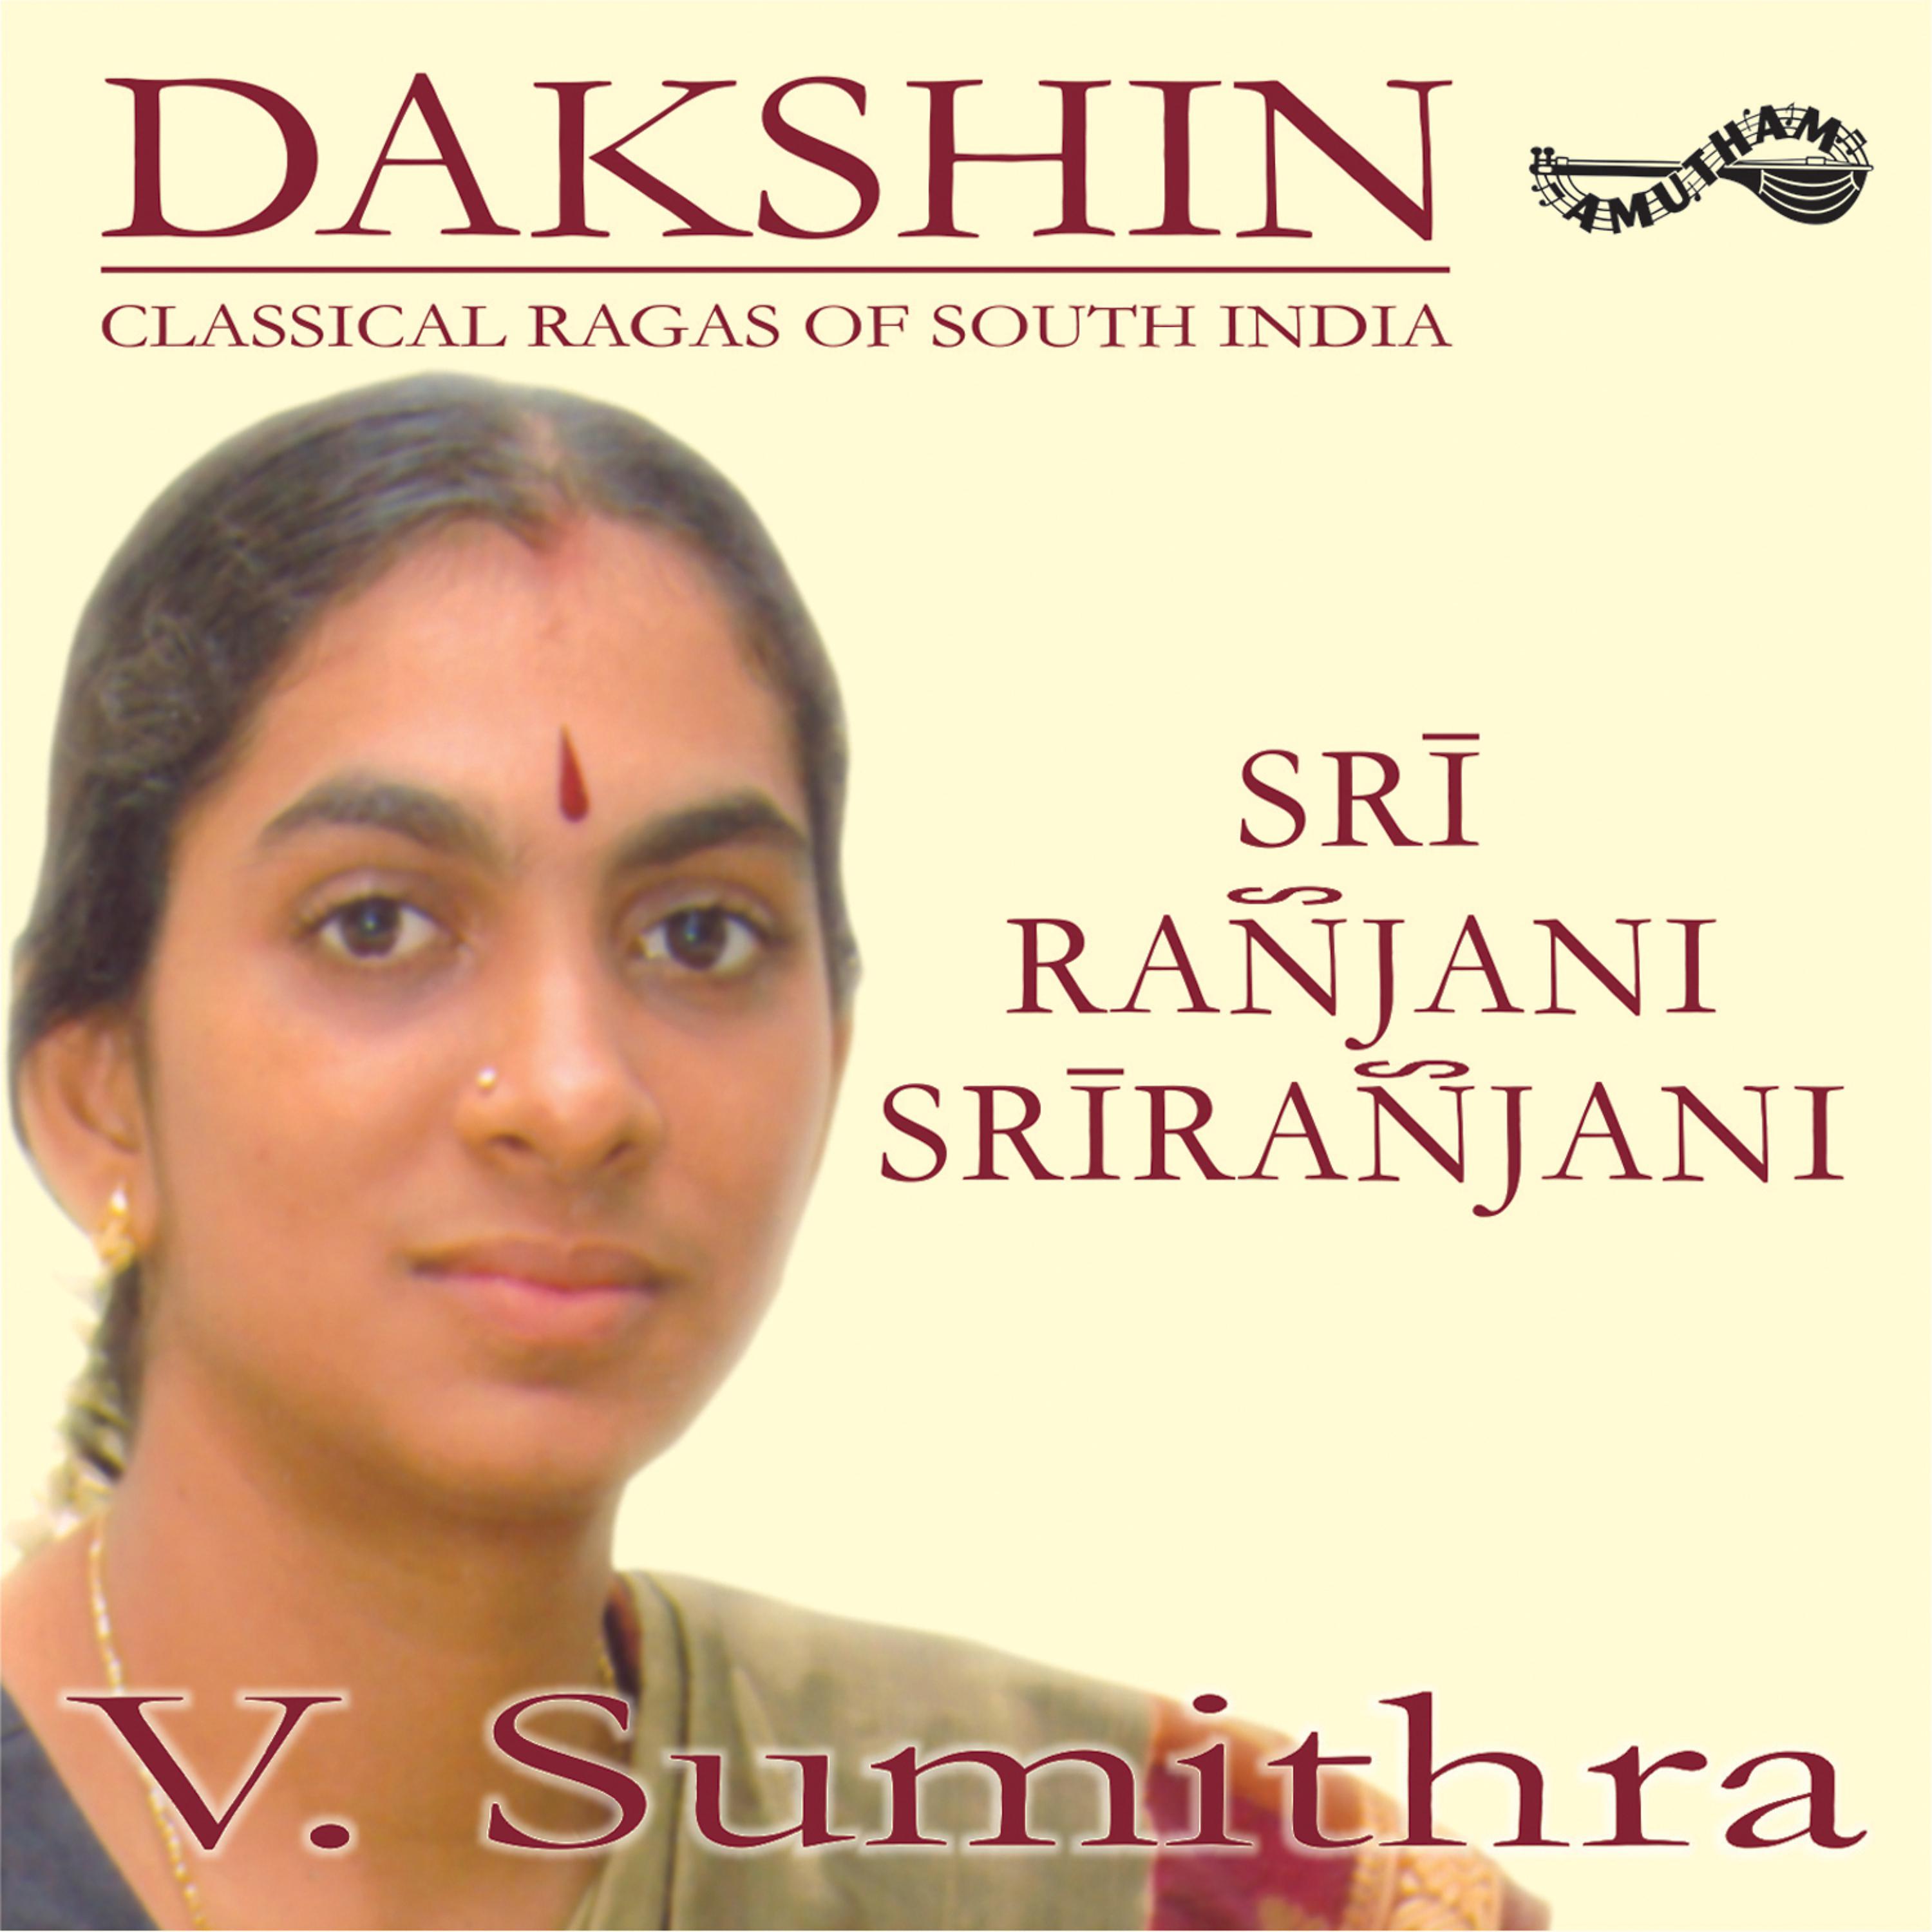 V. Sumithra, Amritha Murali, B. Sivaraman - Sri Muladhara - Sri - Adi